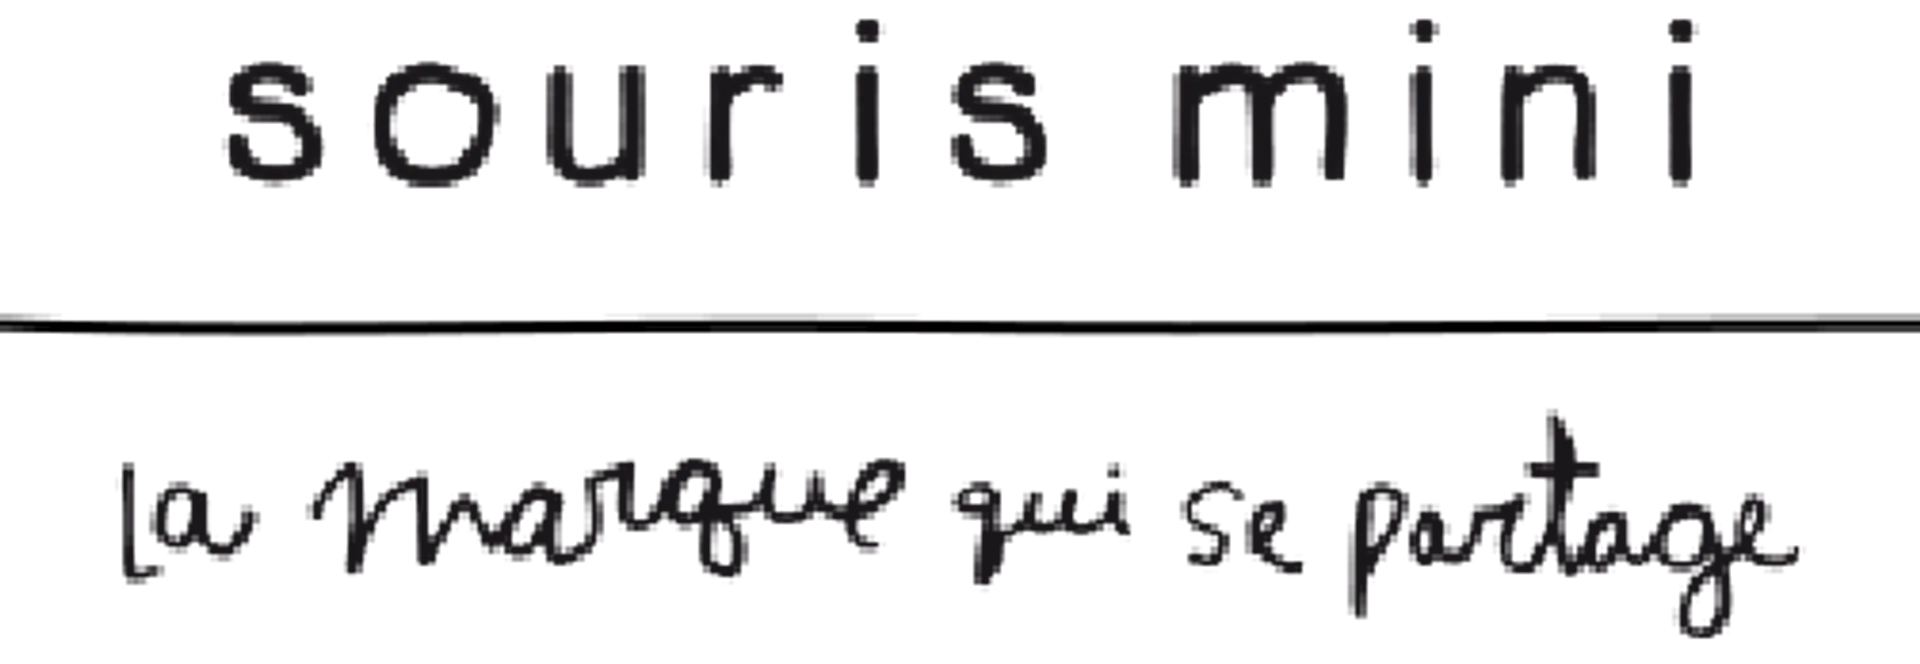 SOURIS MINI logo de circulaire